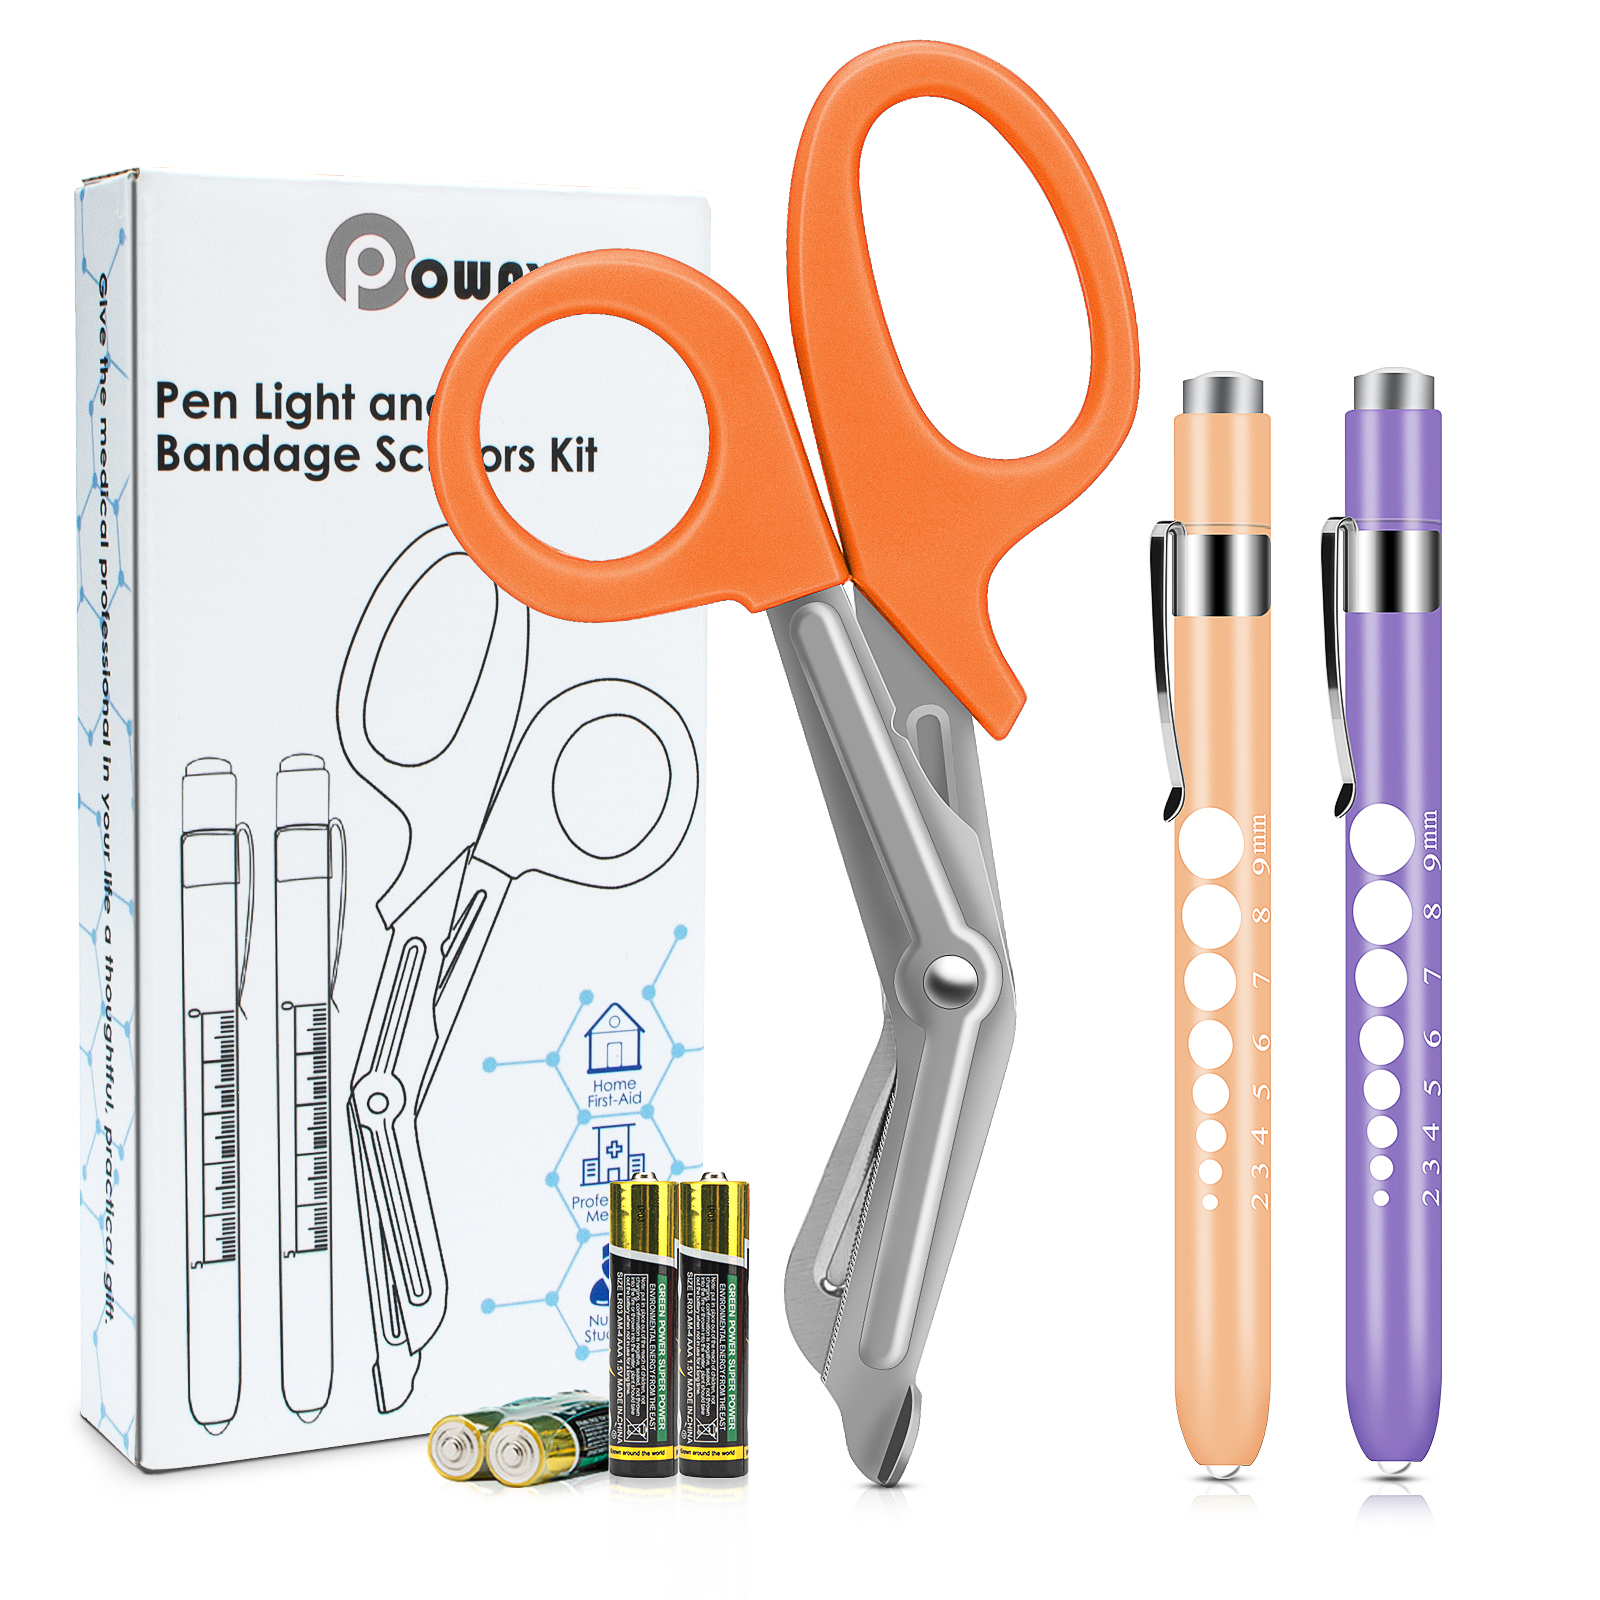 OPOWAY Medical Pen Light und Orange Bandage Scissors 3 Pack, Zwei wiederverwendbare LED-Schüler-Taschenlampe,  mit freien Batterien